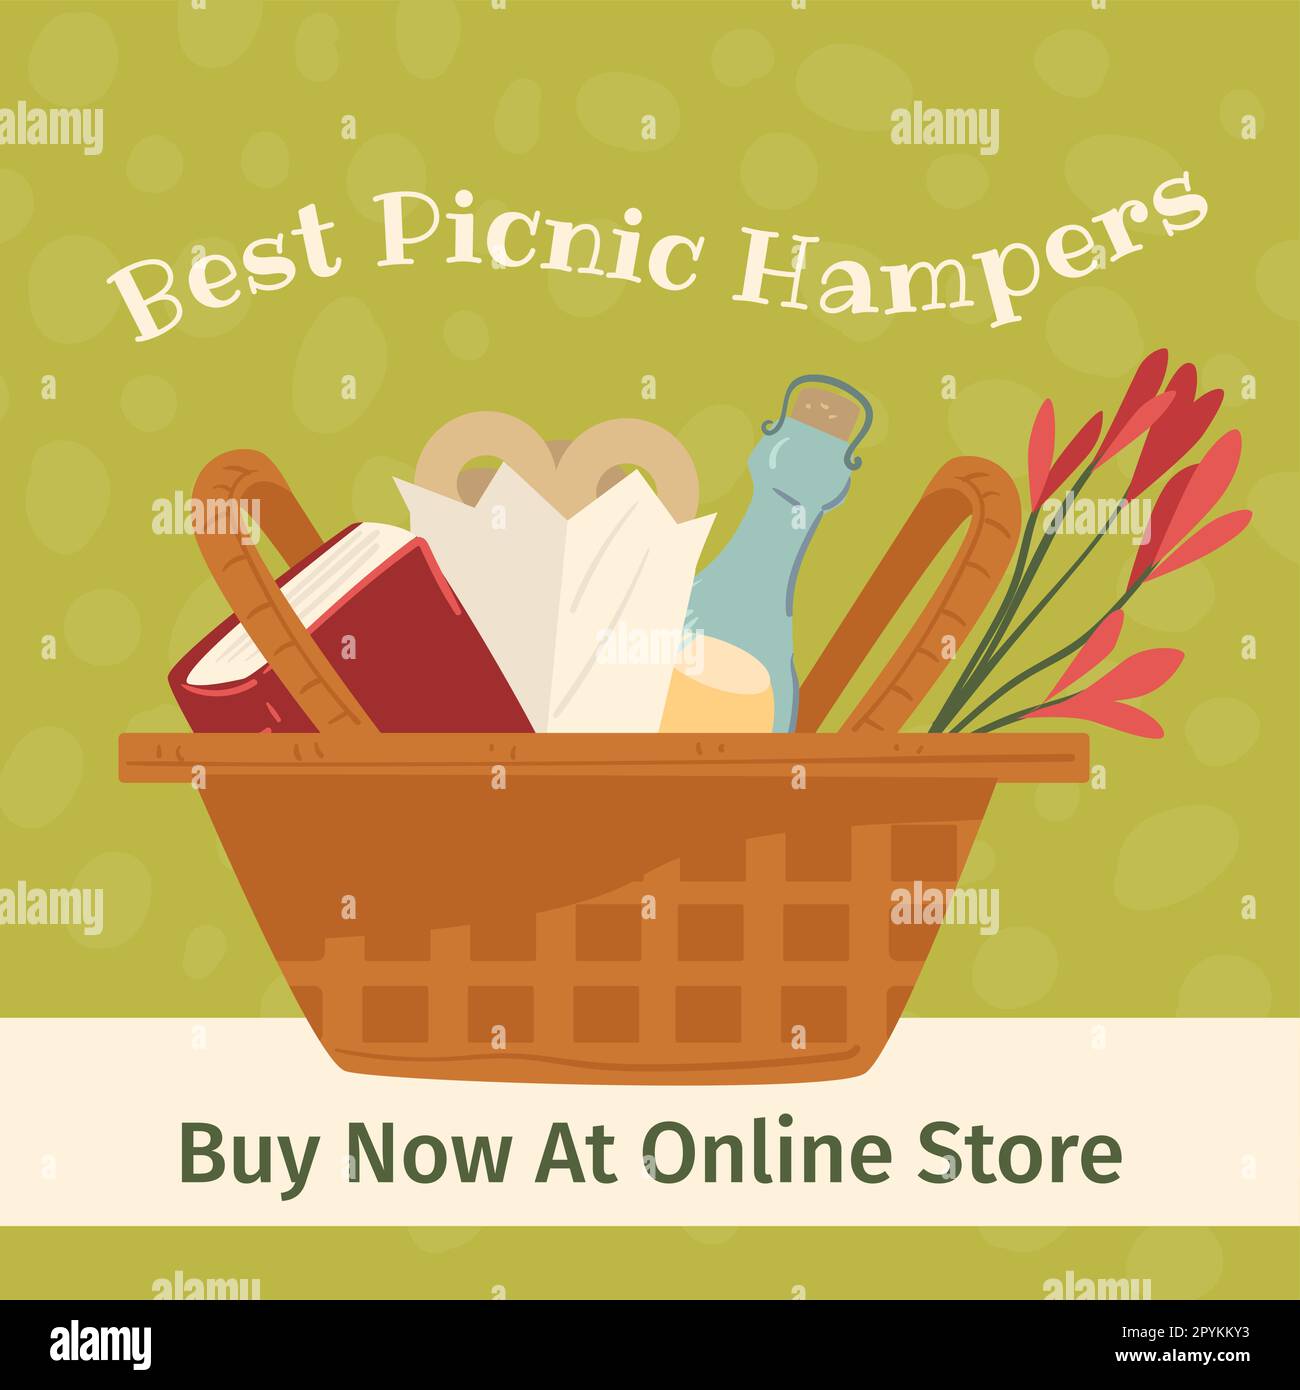 Die besten Picknickkörbe, kaufen Sie jetzt in Online-Shops  Stock-Vektorgrafik - Alamy